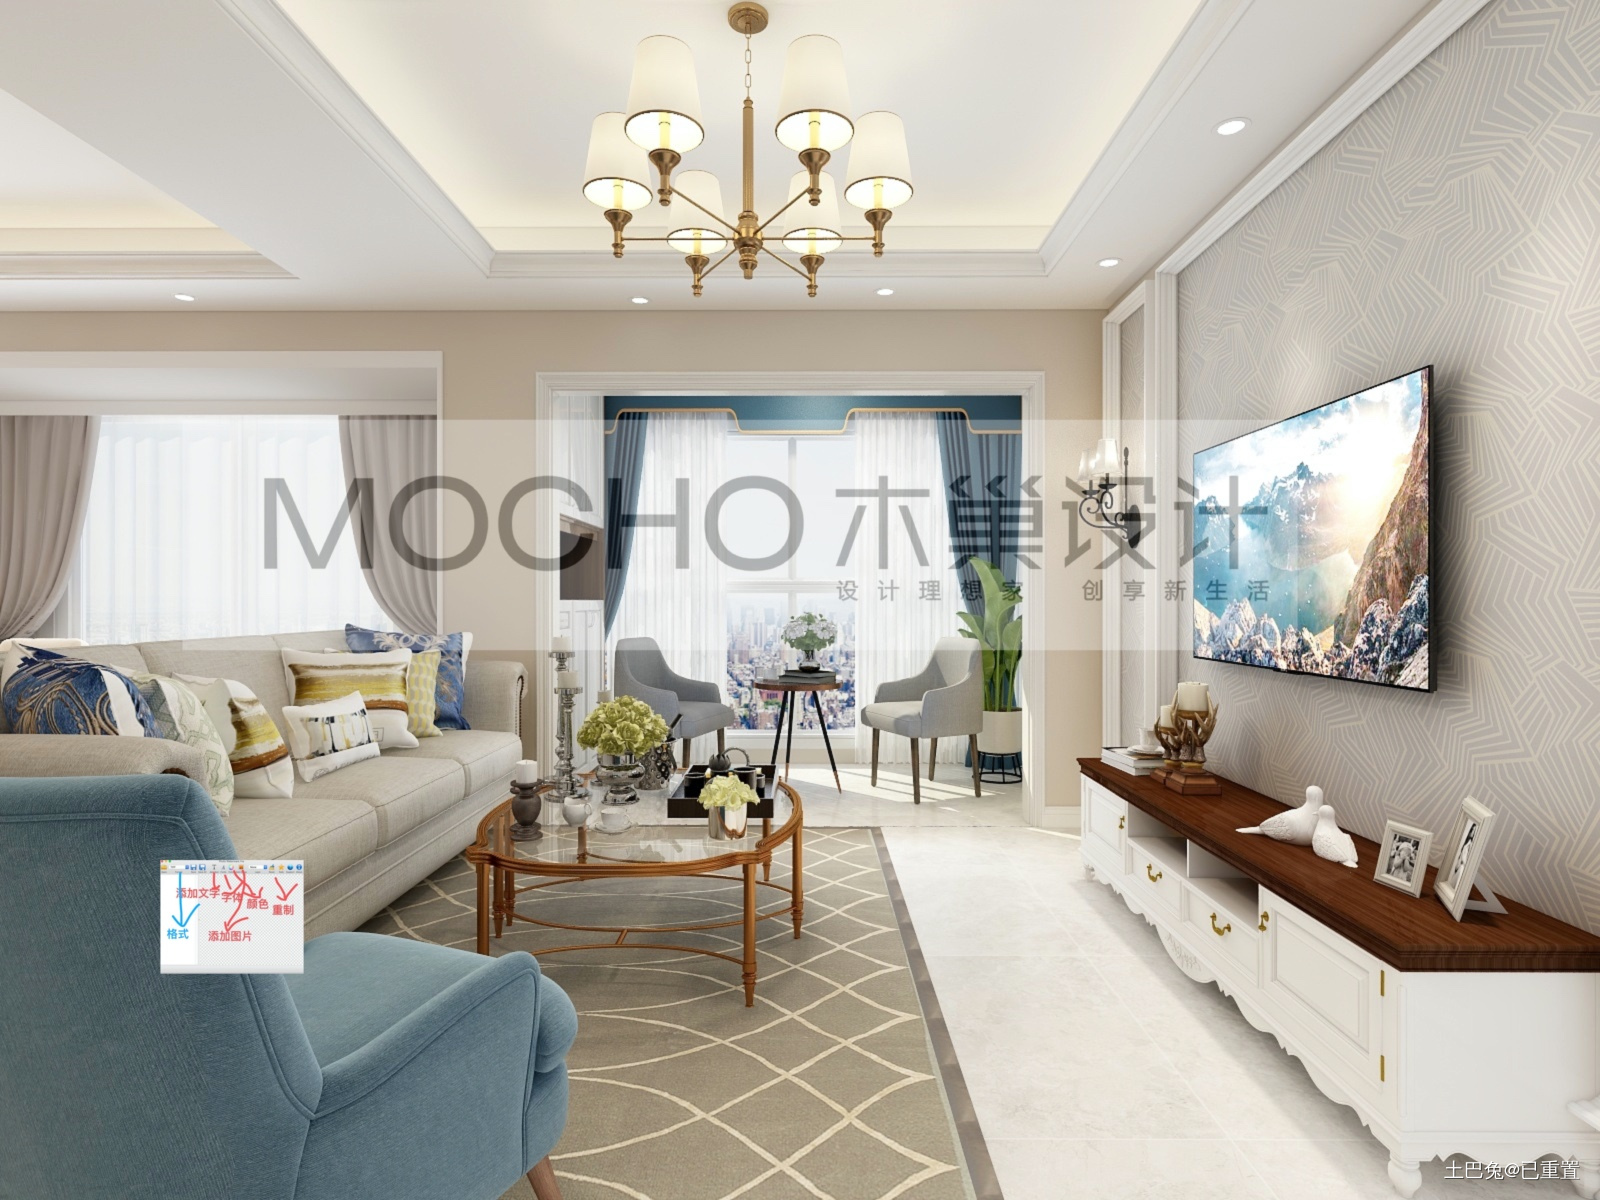 木巢设计美式混搭浅色风格混搭客厅设计图片赏析